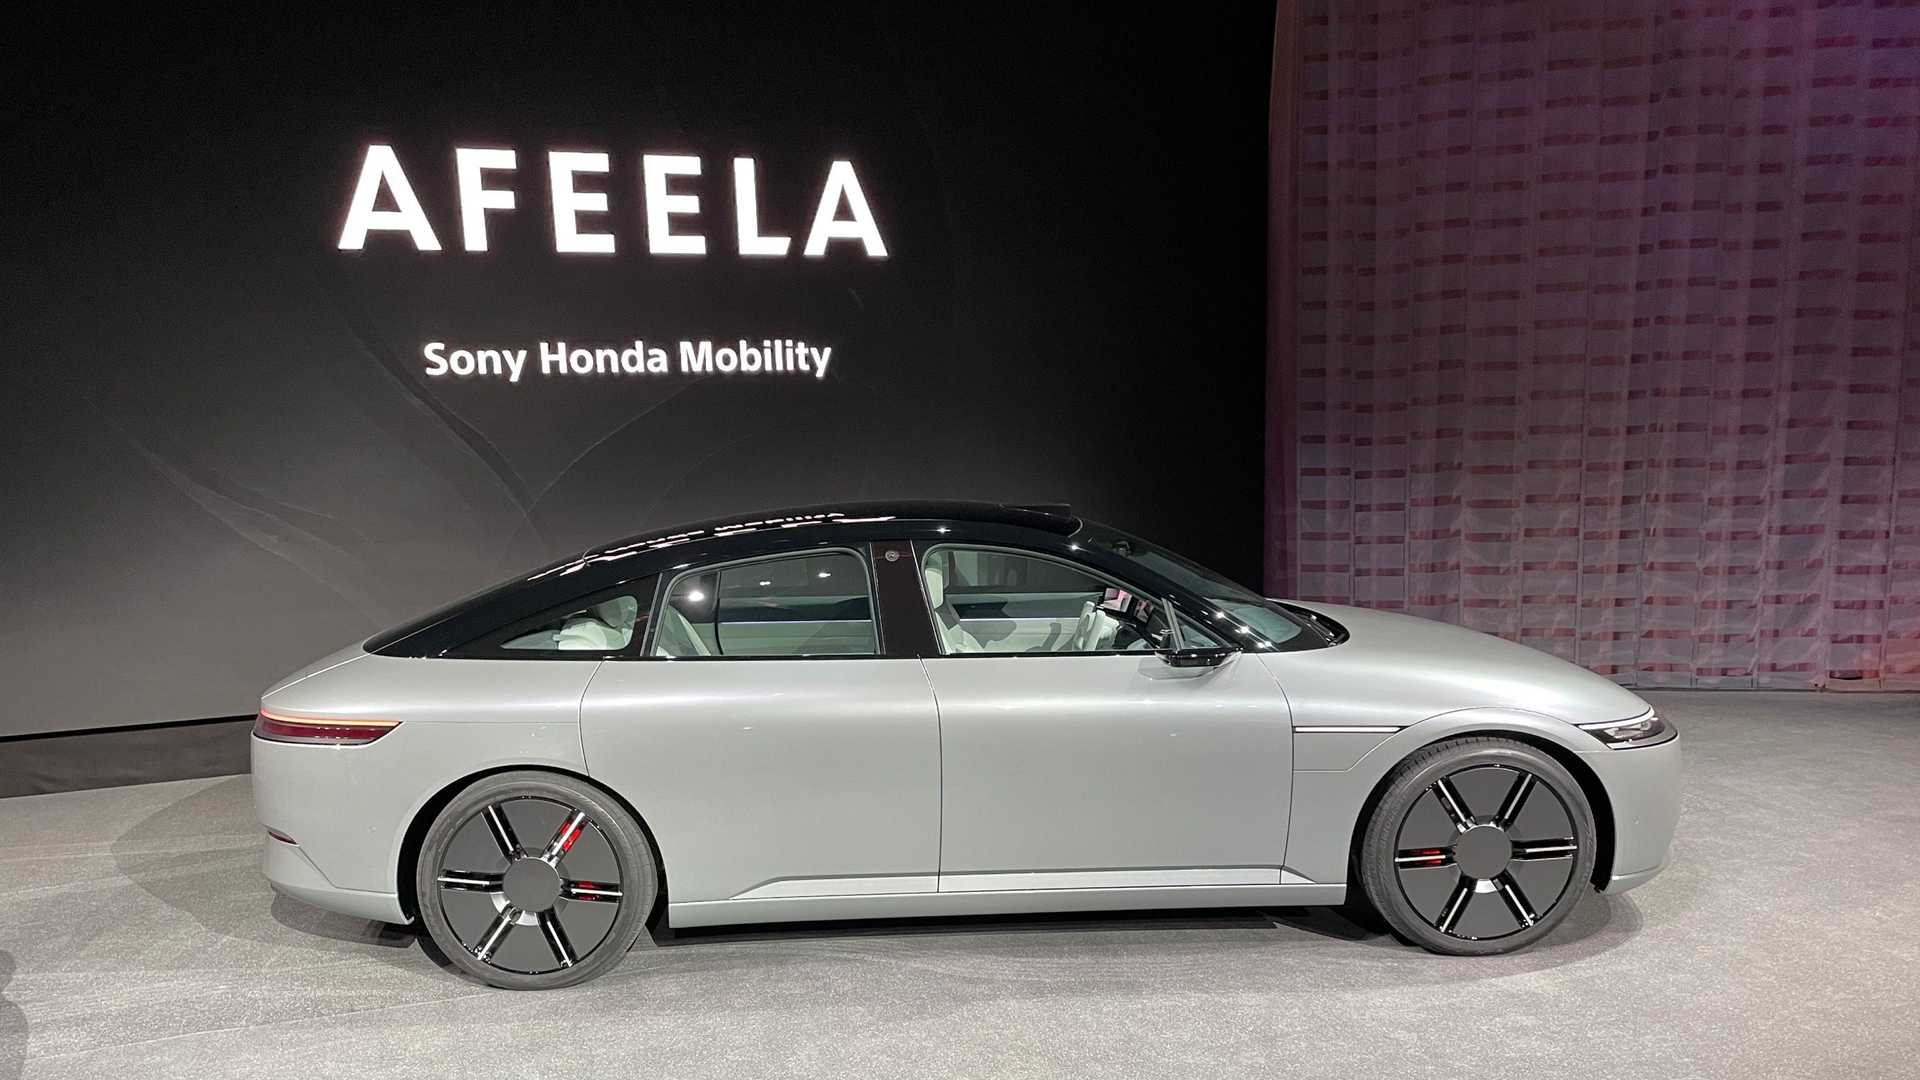 سوني تطلق علامتها التجارية الجديدة للسيارات رسمياً بالتعاون مع هوندا 4